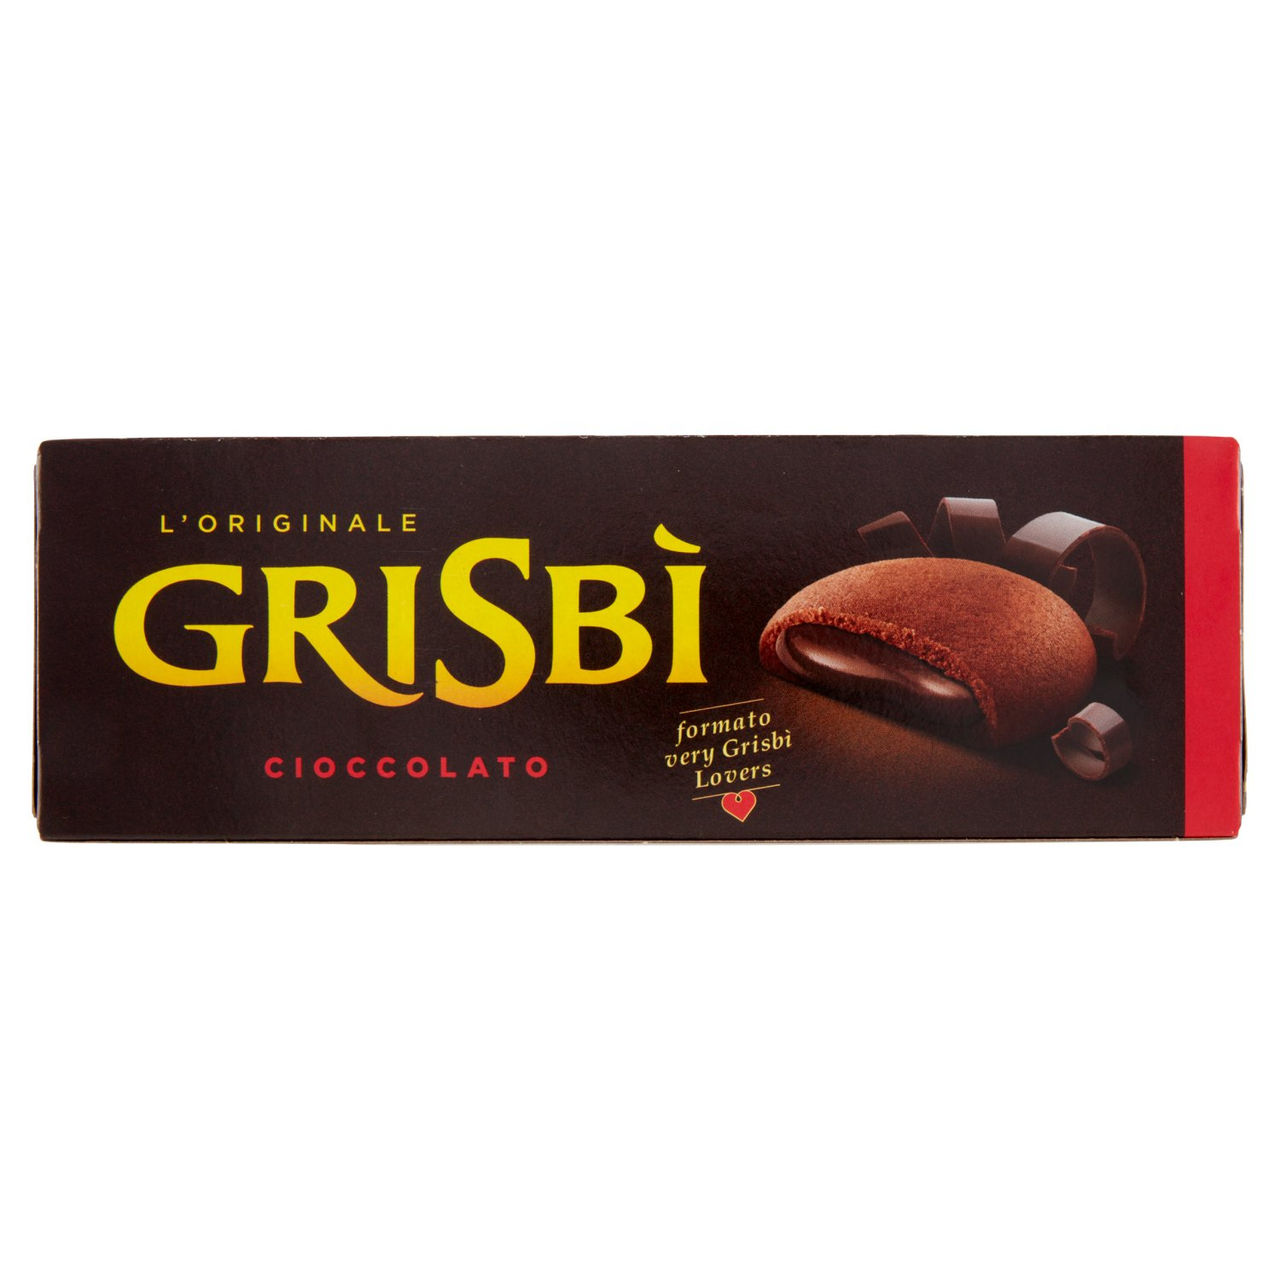 Grisbì Cioccolato 9 x 16,7 g in vendita online